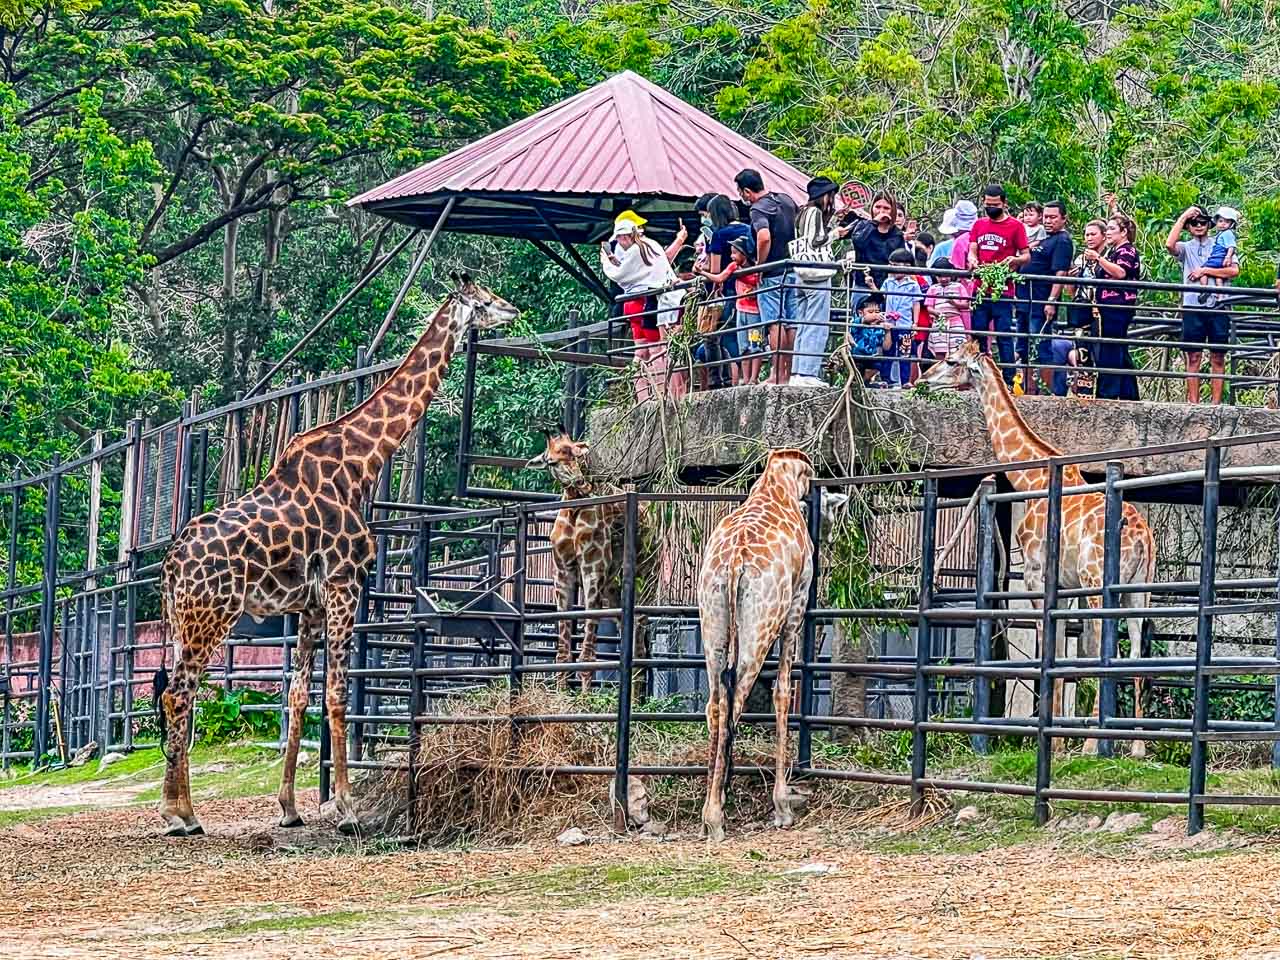 泰國親子景點,泰國野生動物園,芭達雅景點,芭達雅野生動物園,芭達雅景點綠山動物園,綠山野生動物園,泰國動物園